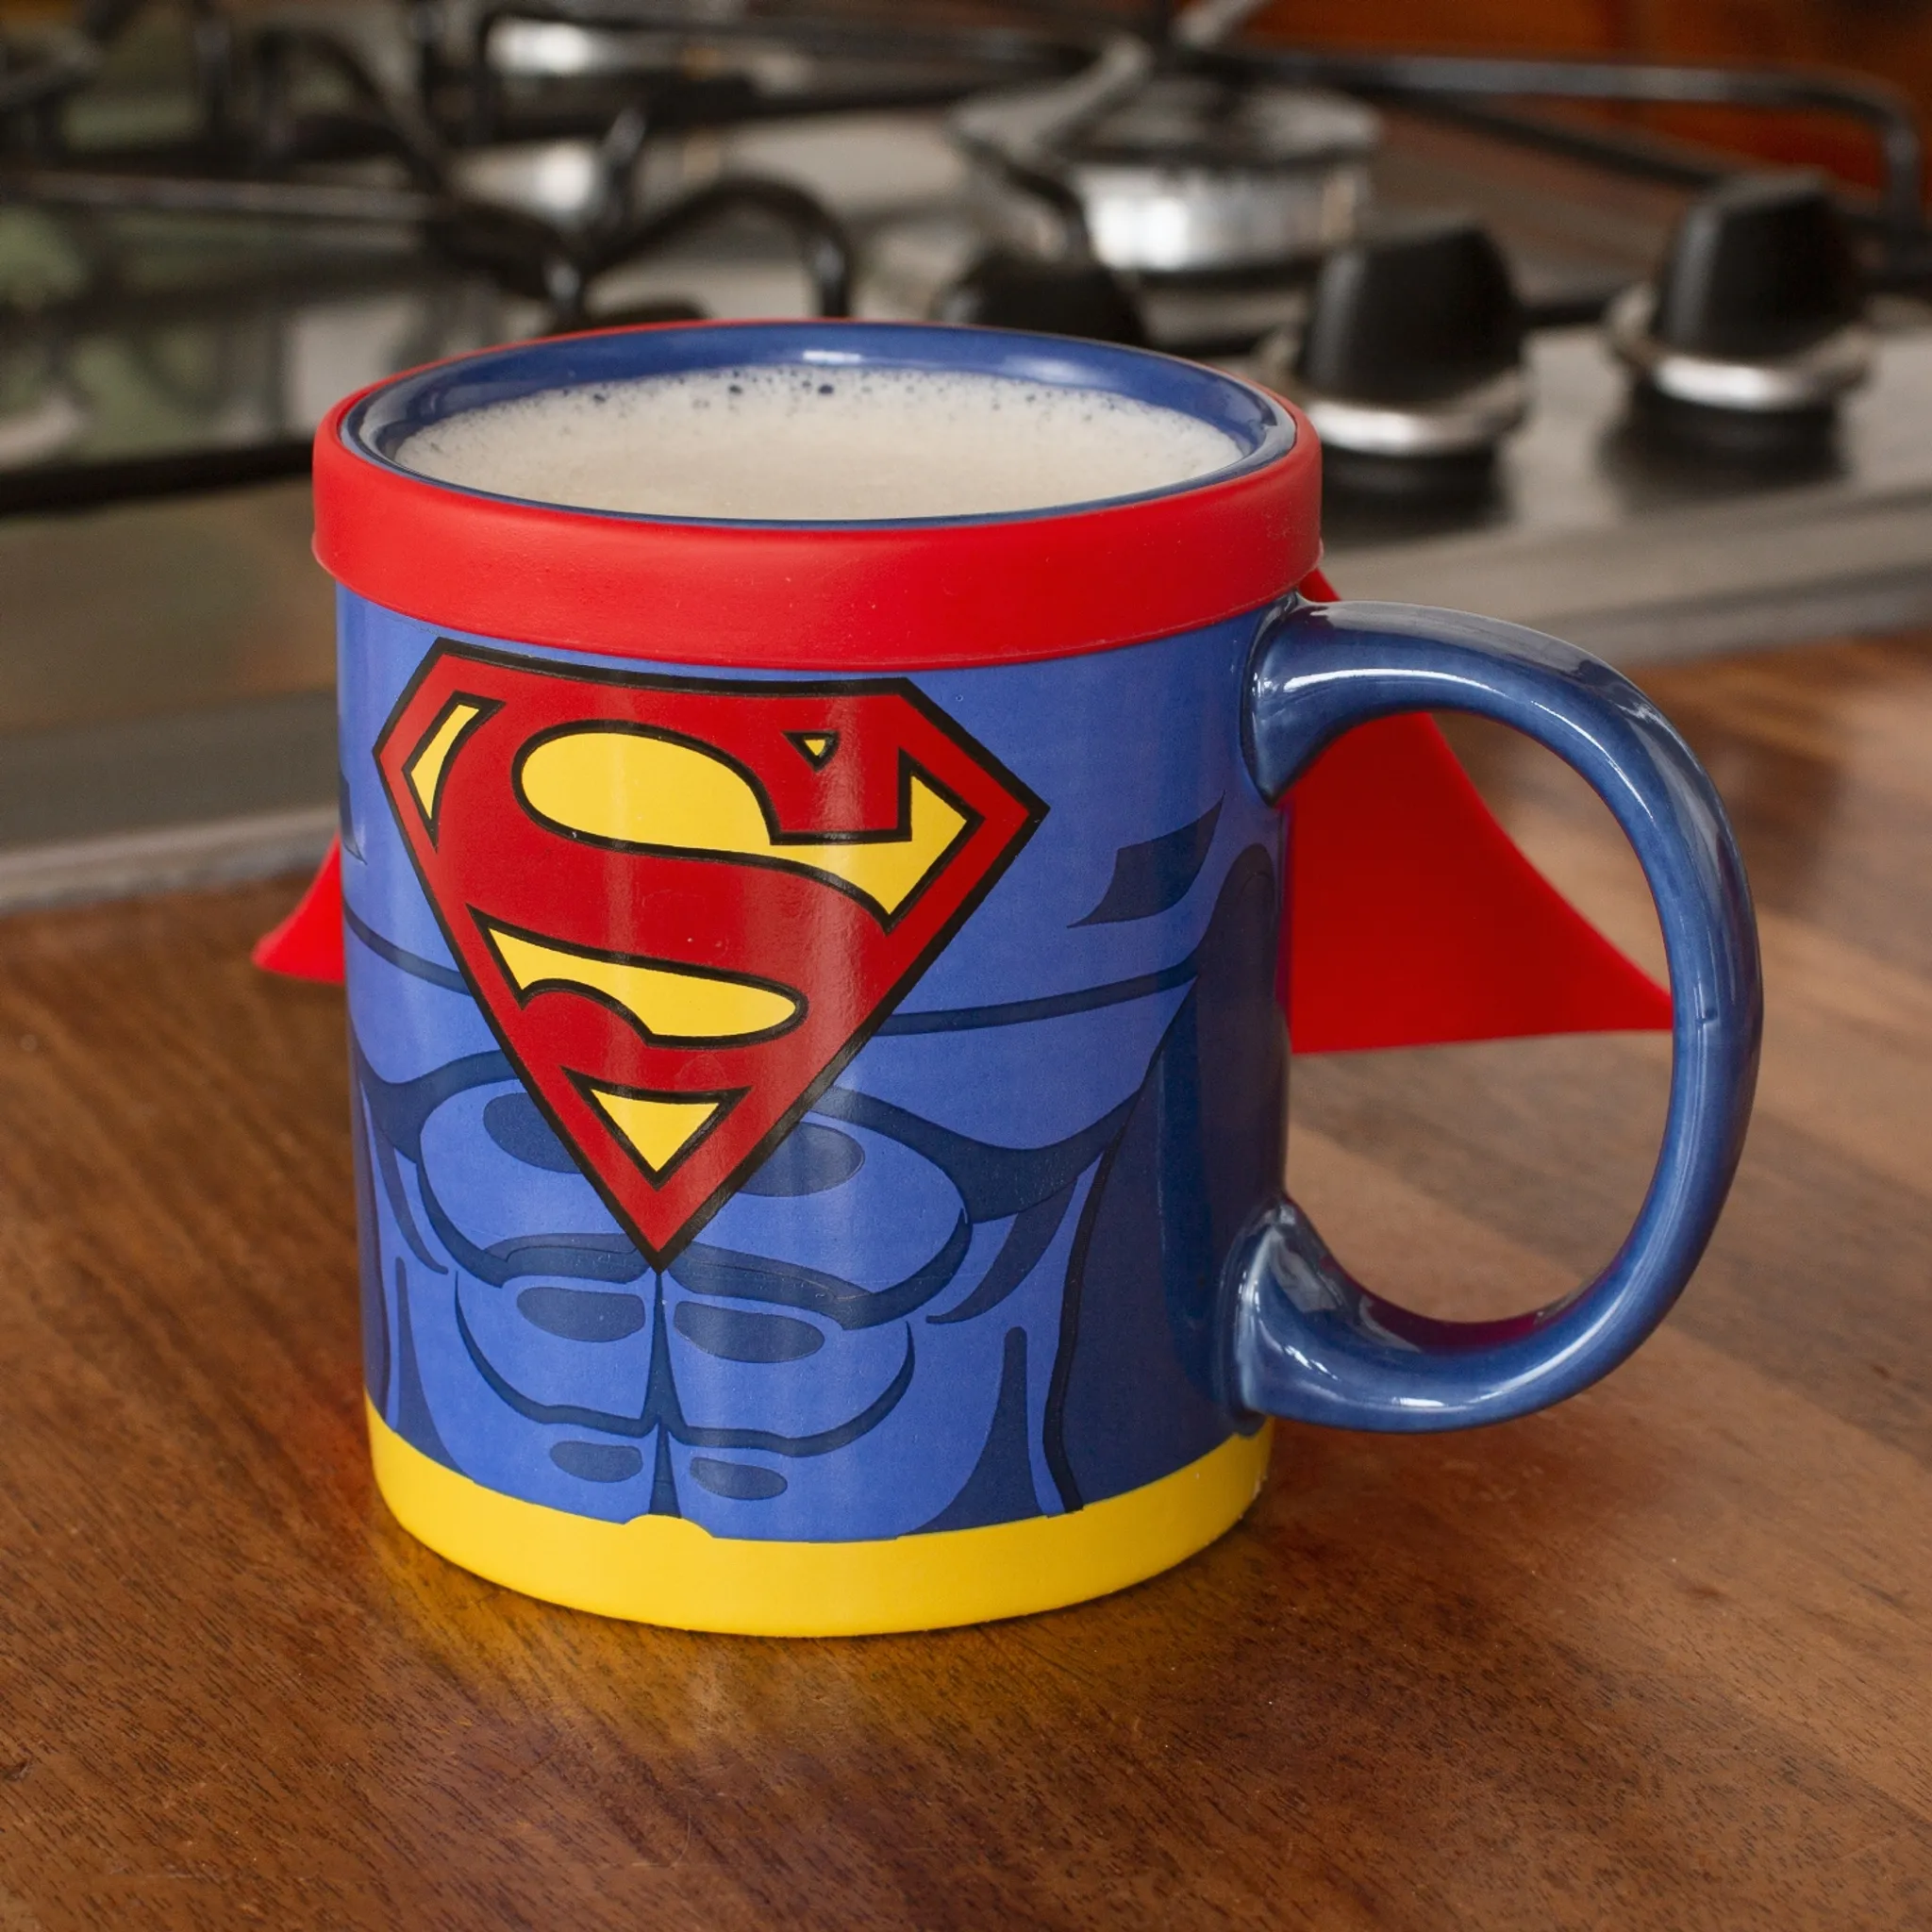 kaufland.de | Thumbs Up Superman Mug With Cape, Eins / Eine (R), 0.25 L, Blue, Red, Ceramic, Silicone, Universal, 1 Piece (S)